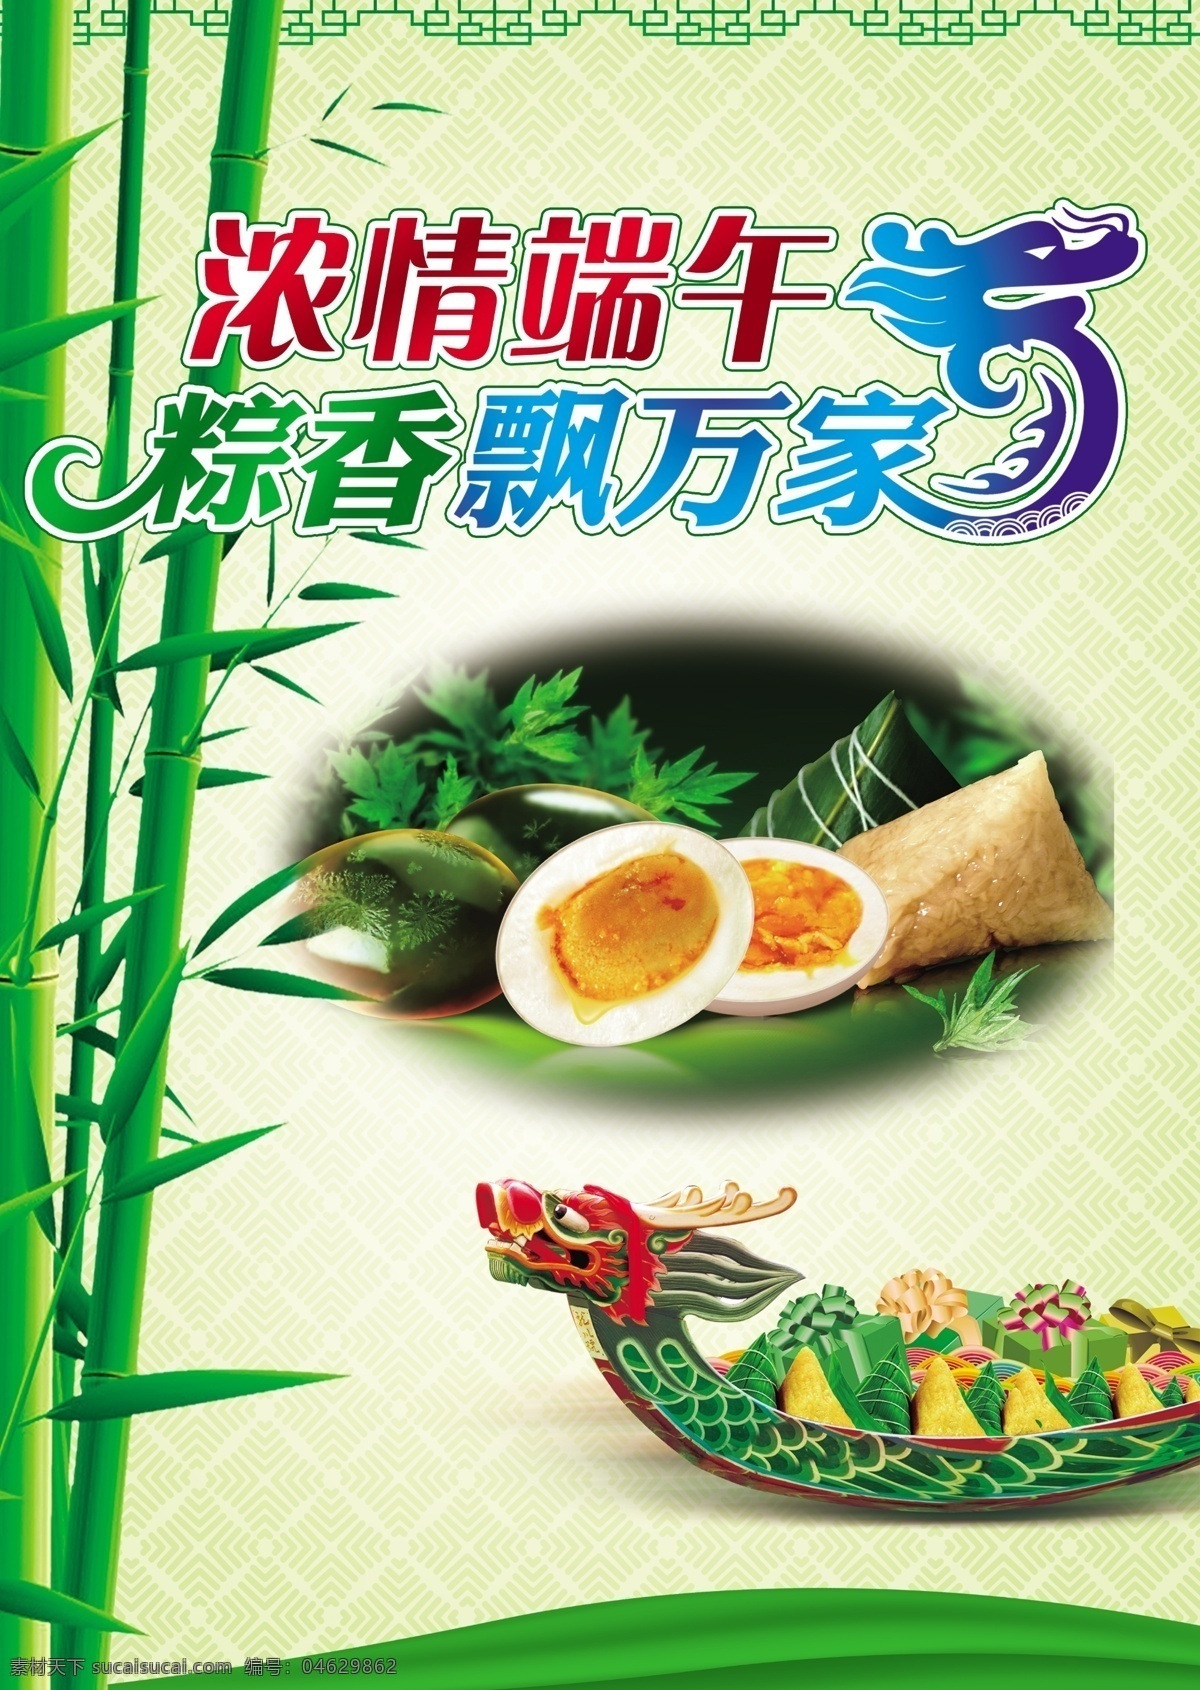 端午 龙舟 粽子 节 端午节 粽子节 浓情 花样设计 竹子 白底 300分辨率 优雅 绿色